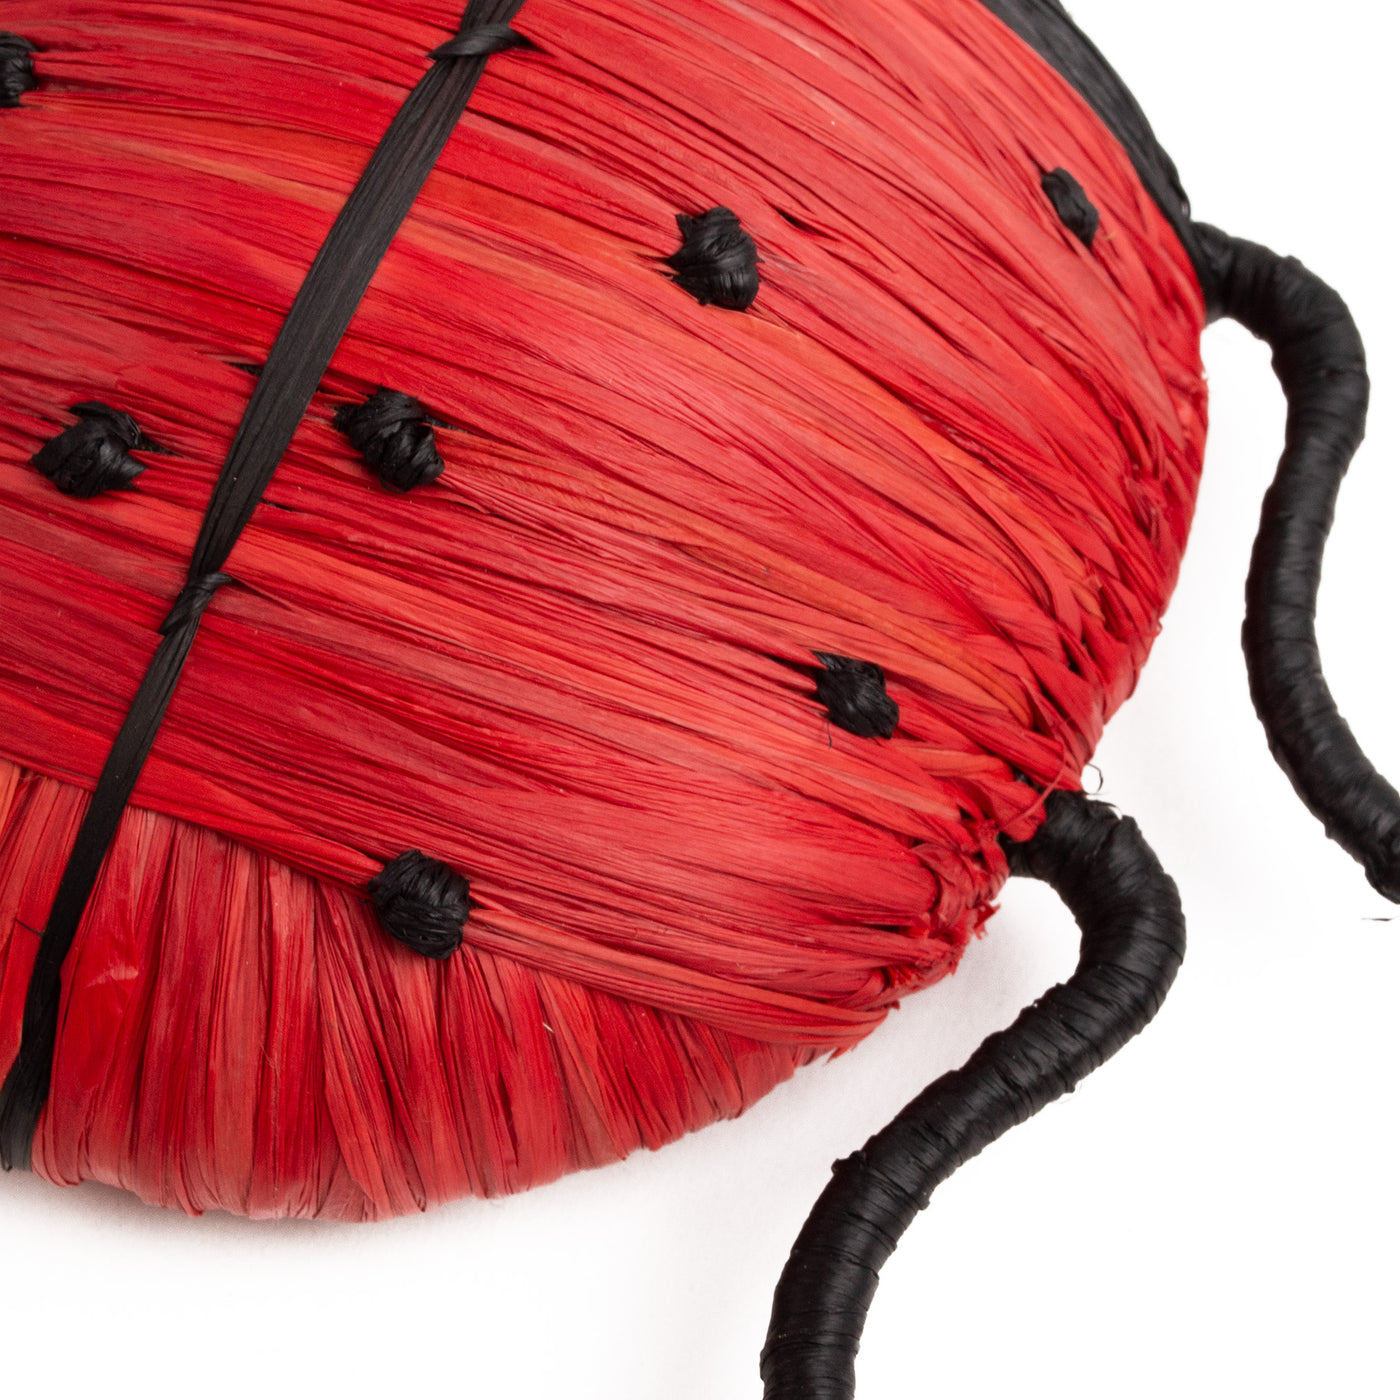 Bloom Figurine - 5.5" Red Ladybug